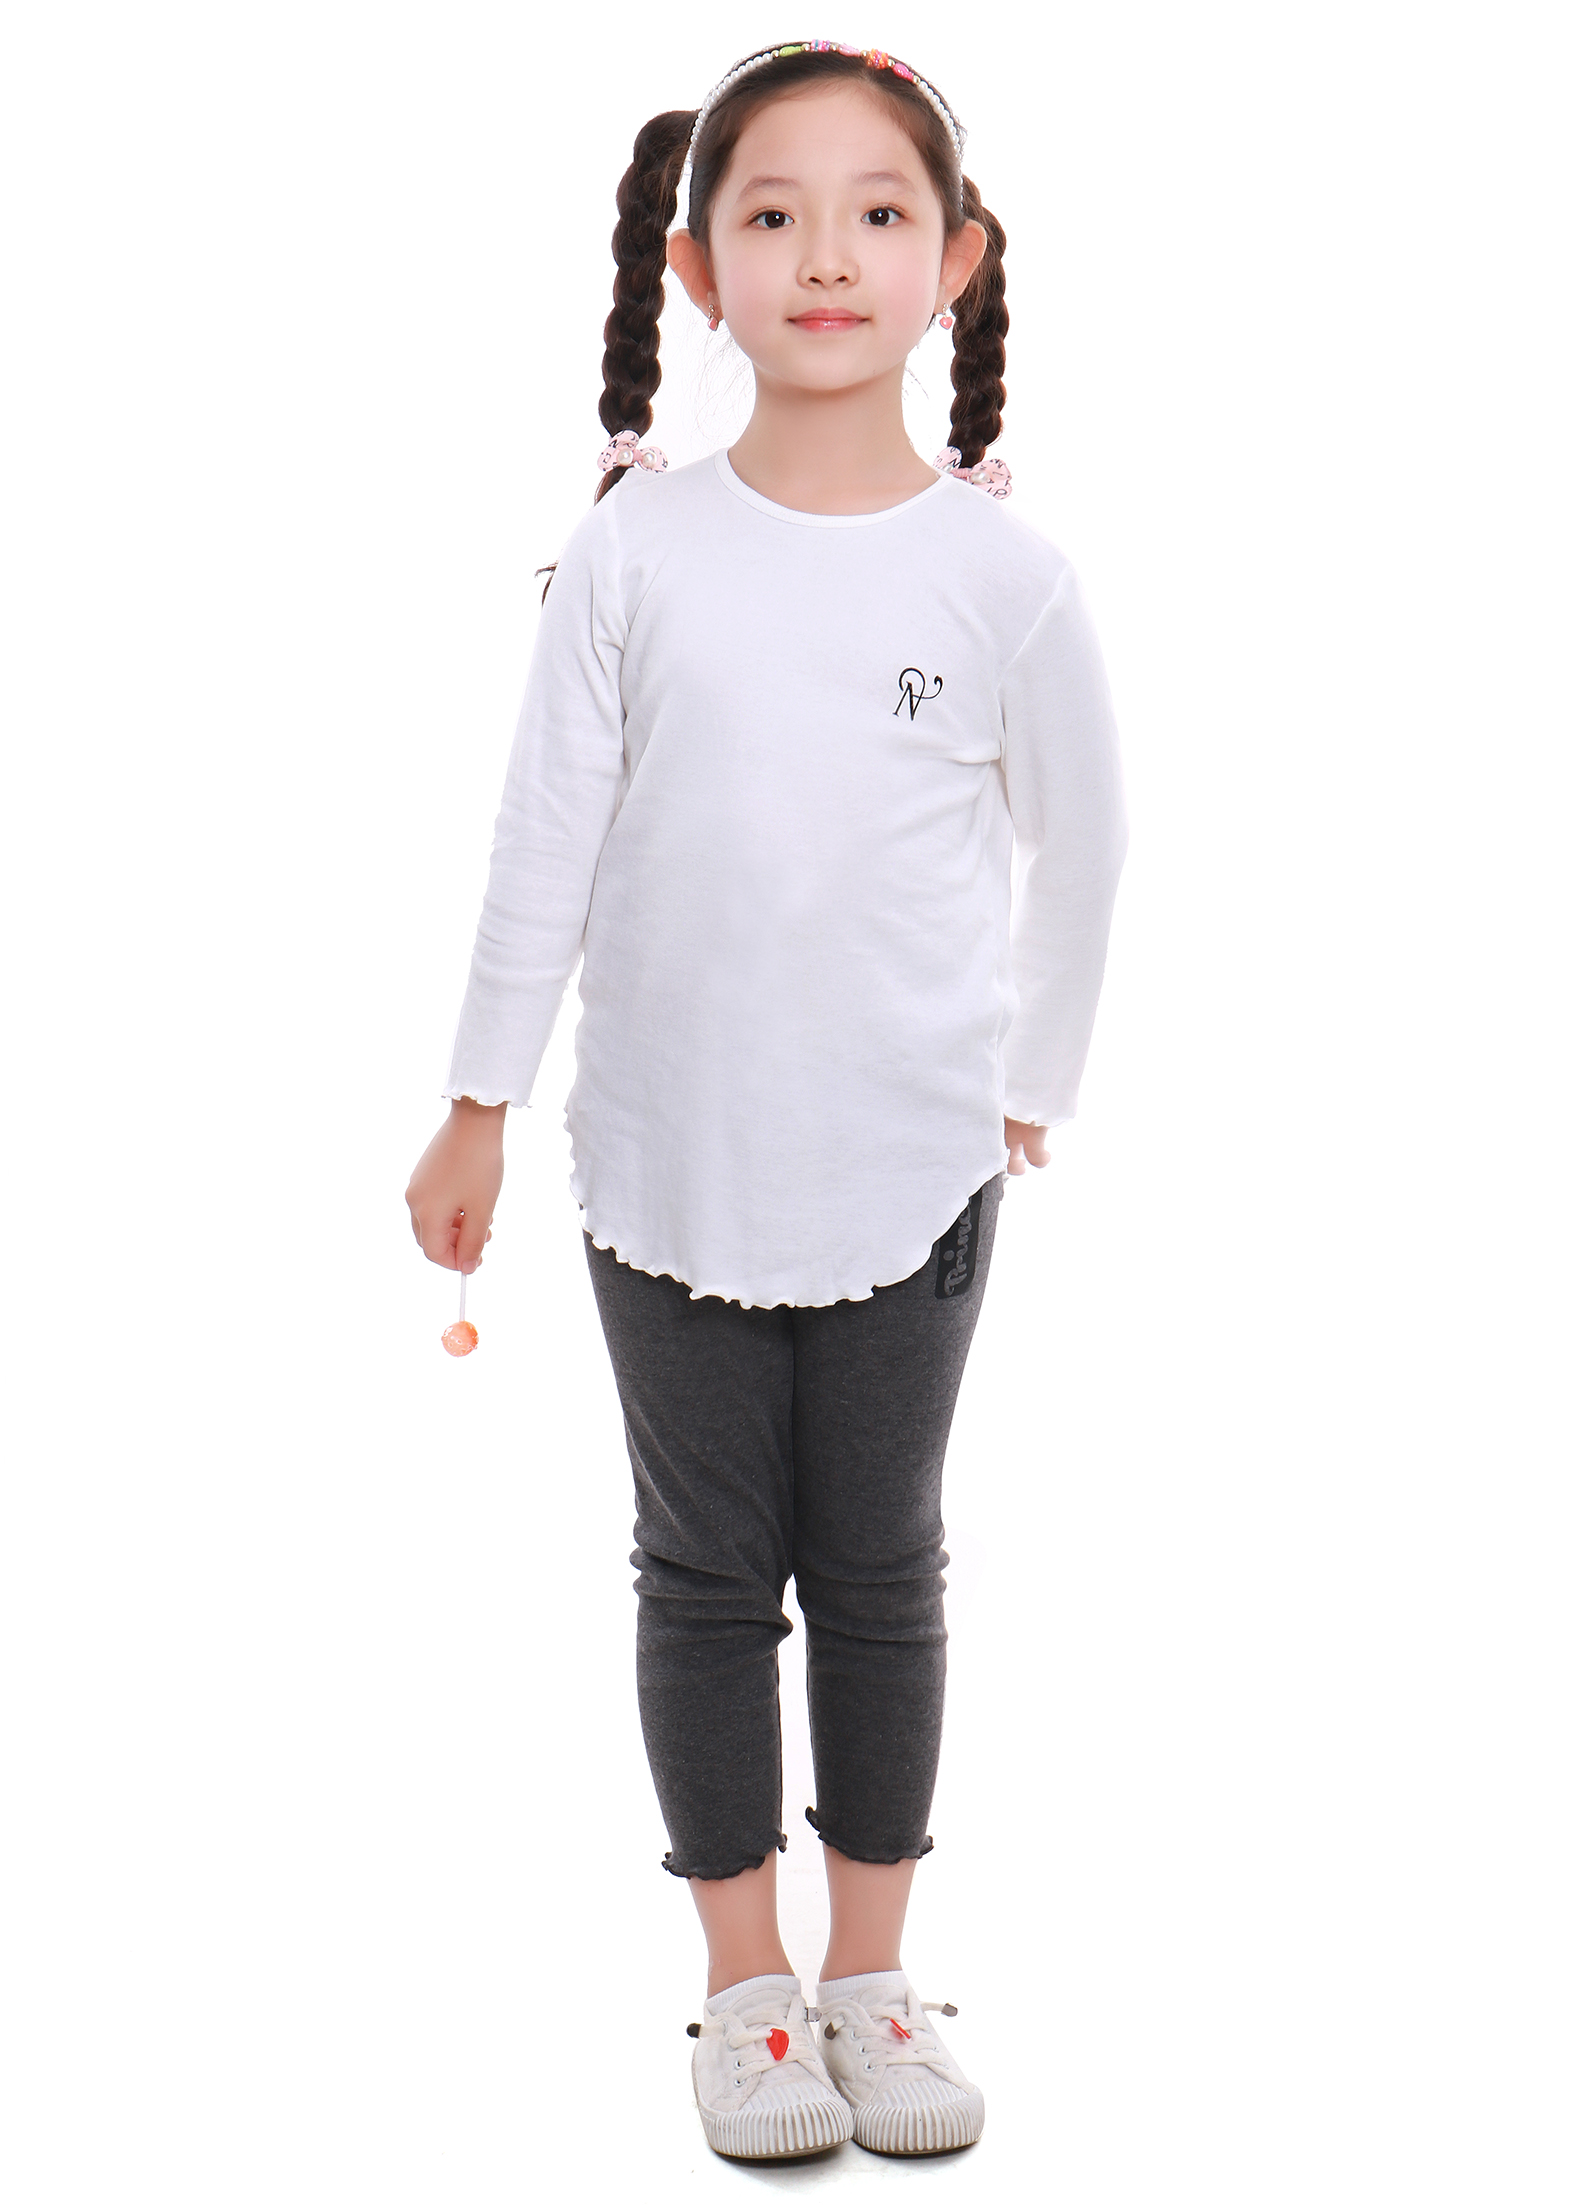 Bộ đồ thu đông cho bé gái Narsis KM9050 màu trắng xinh xắn